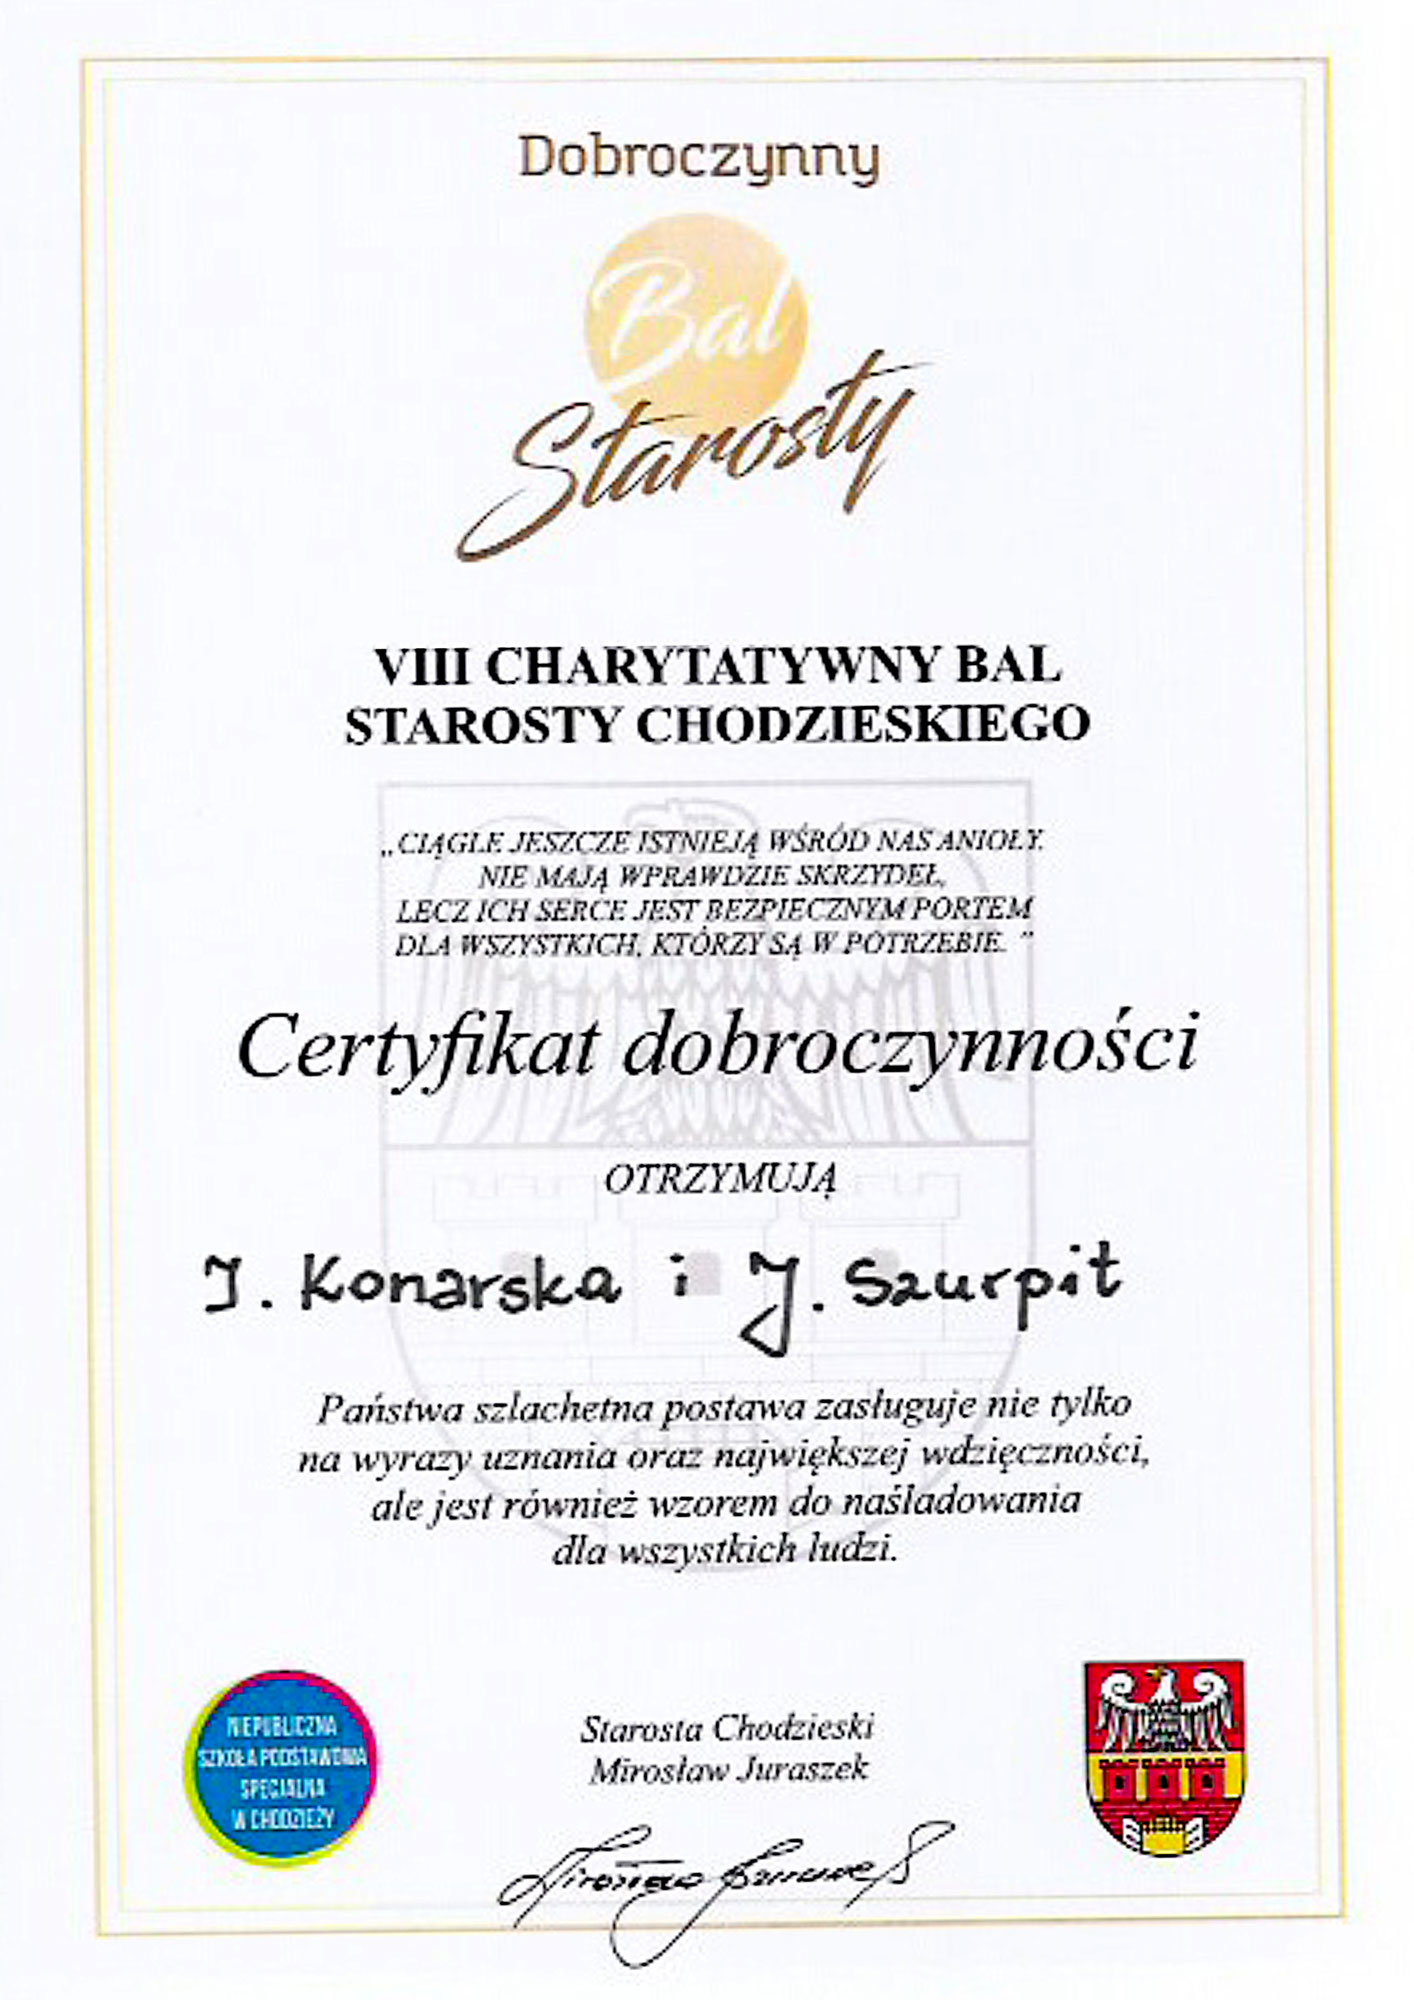 Firma NEO INVEST fundatorem nagród VIII Charytatywnego Balu Starosty Chodzieskiego